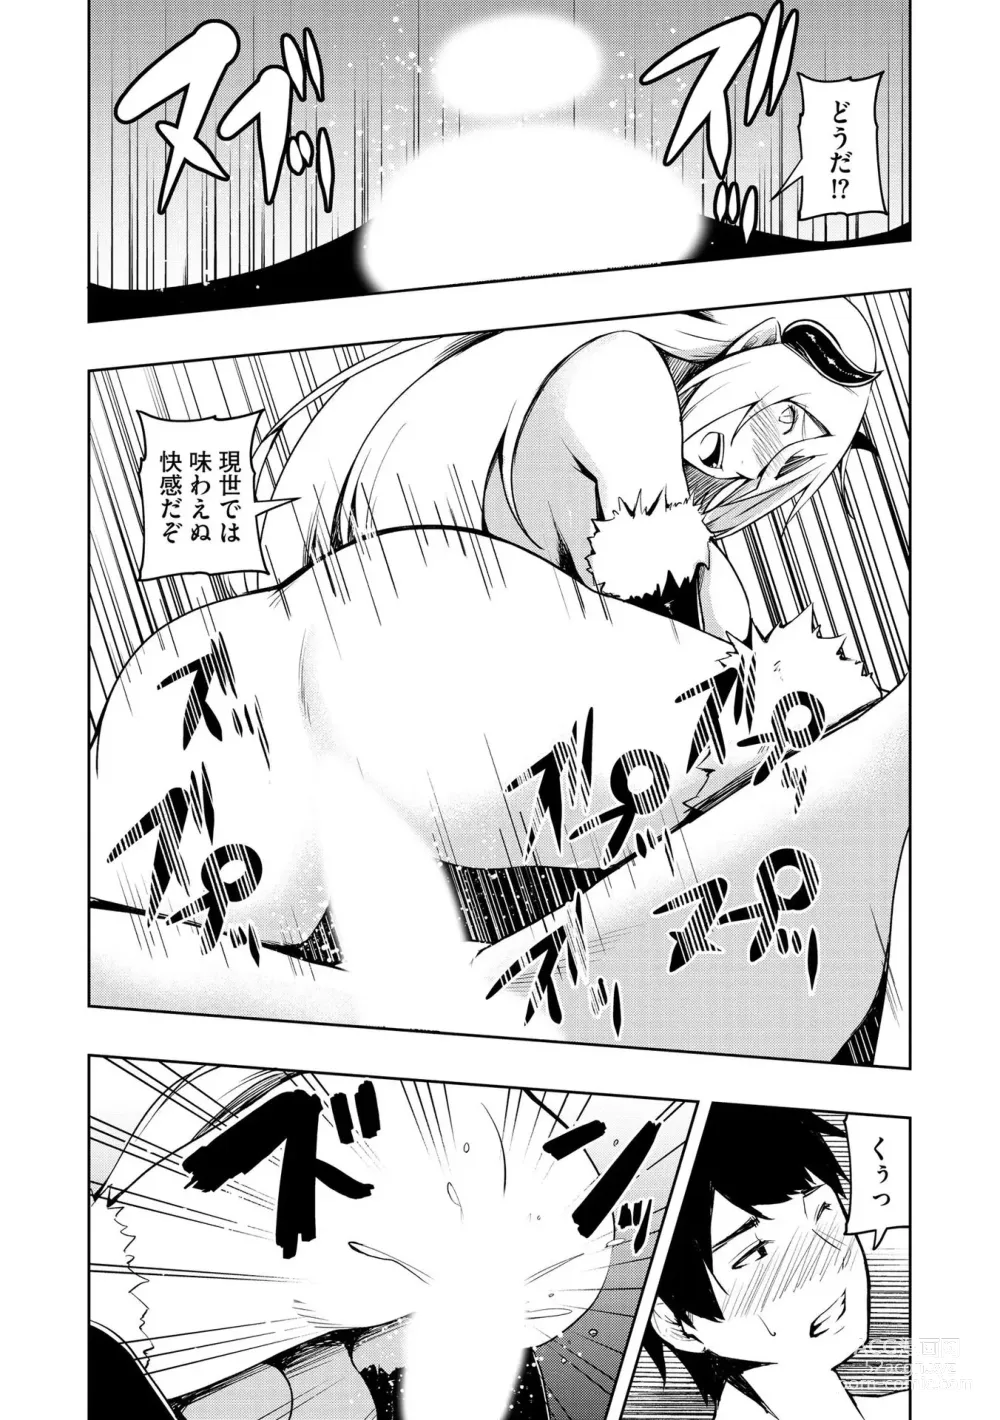 Page 179 of manga Kai-In Hontou wa Yarashii Toshi Densetsu